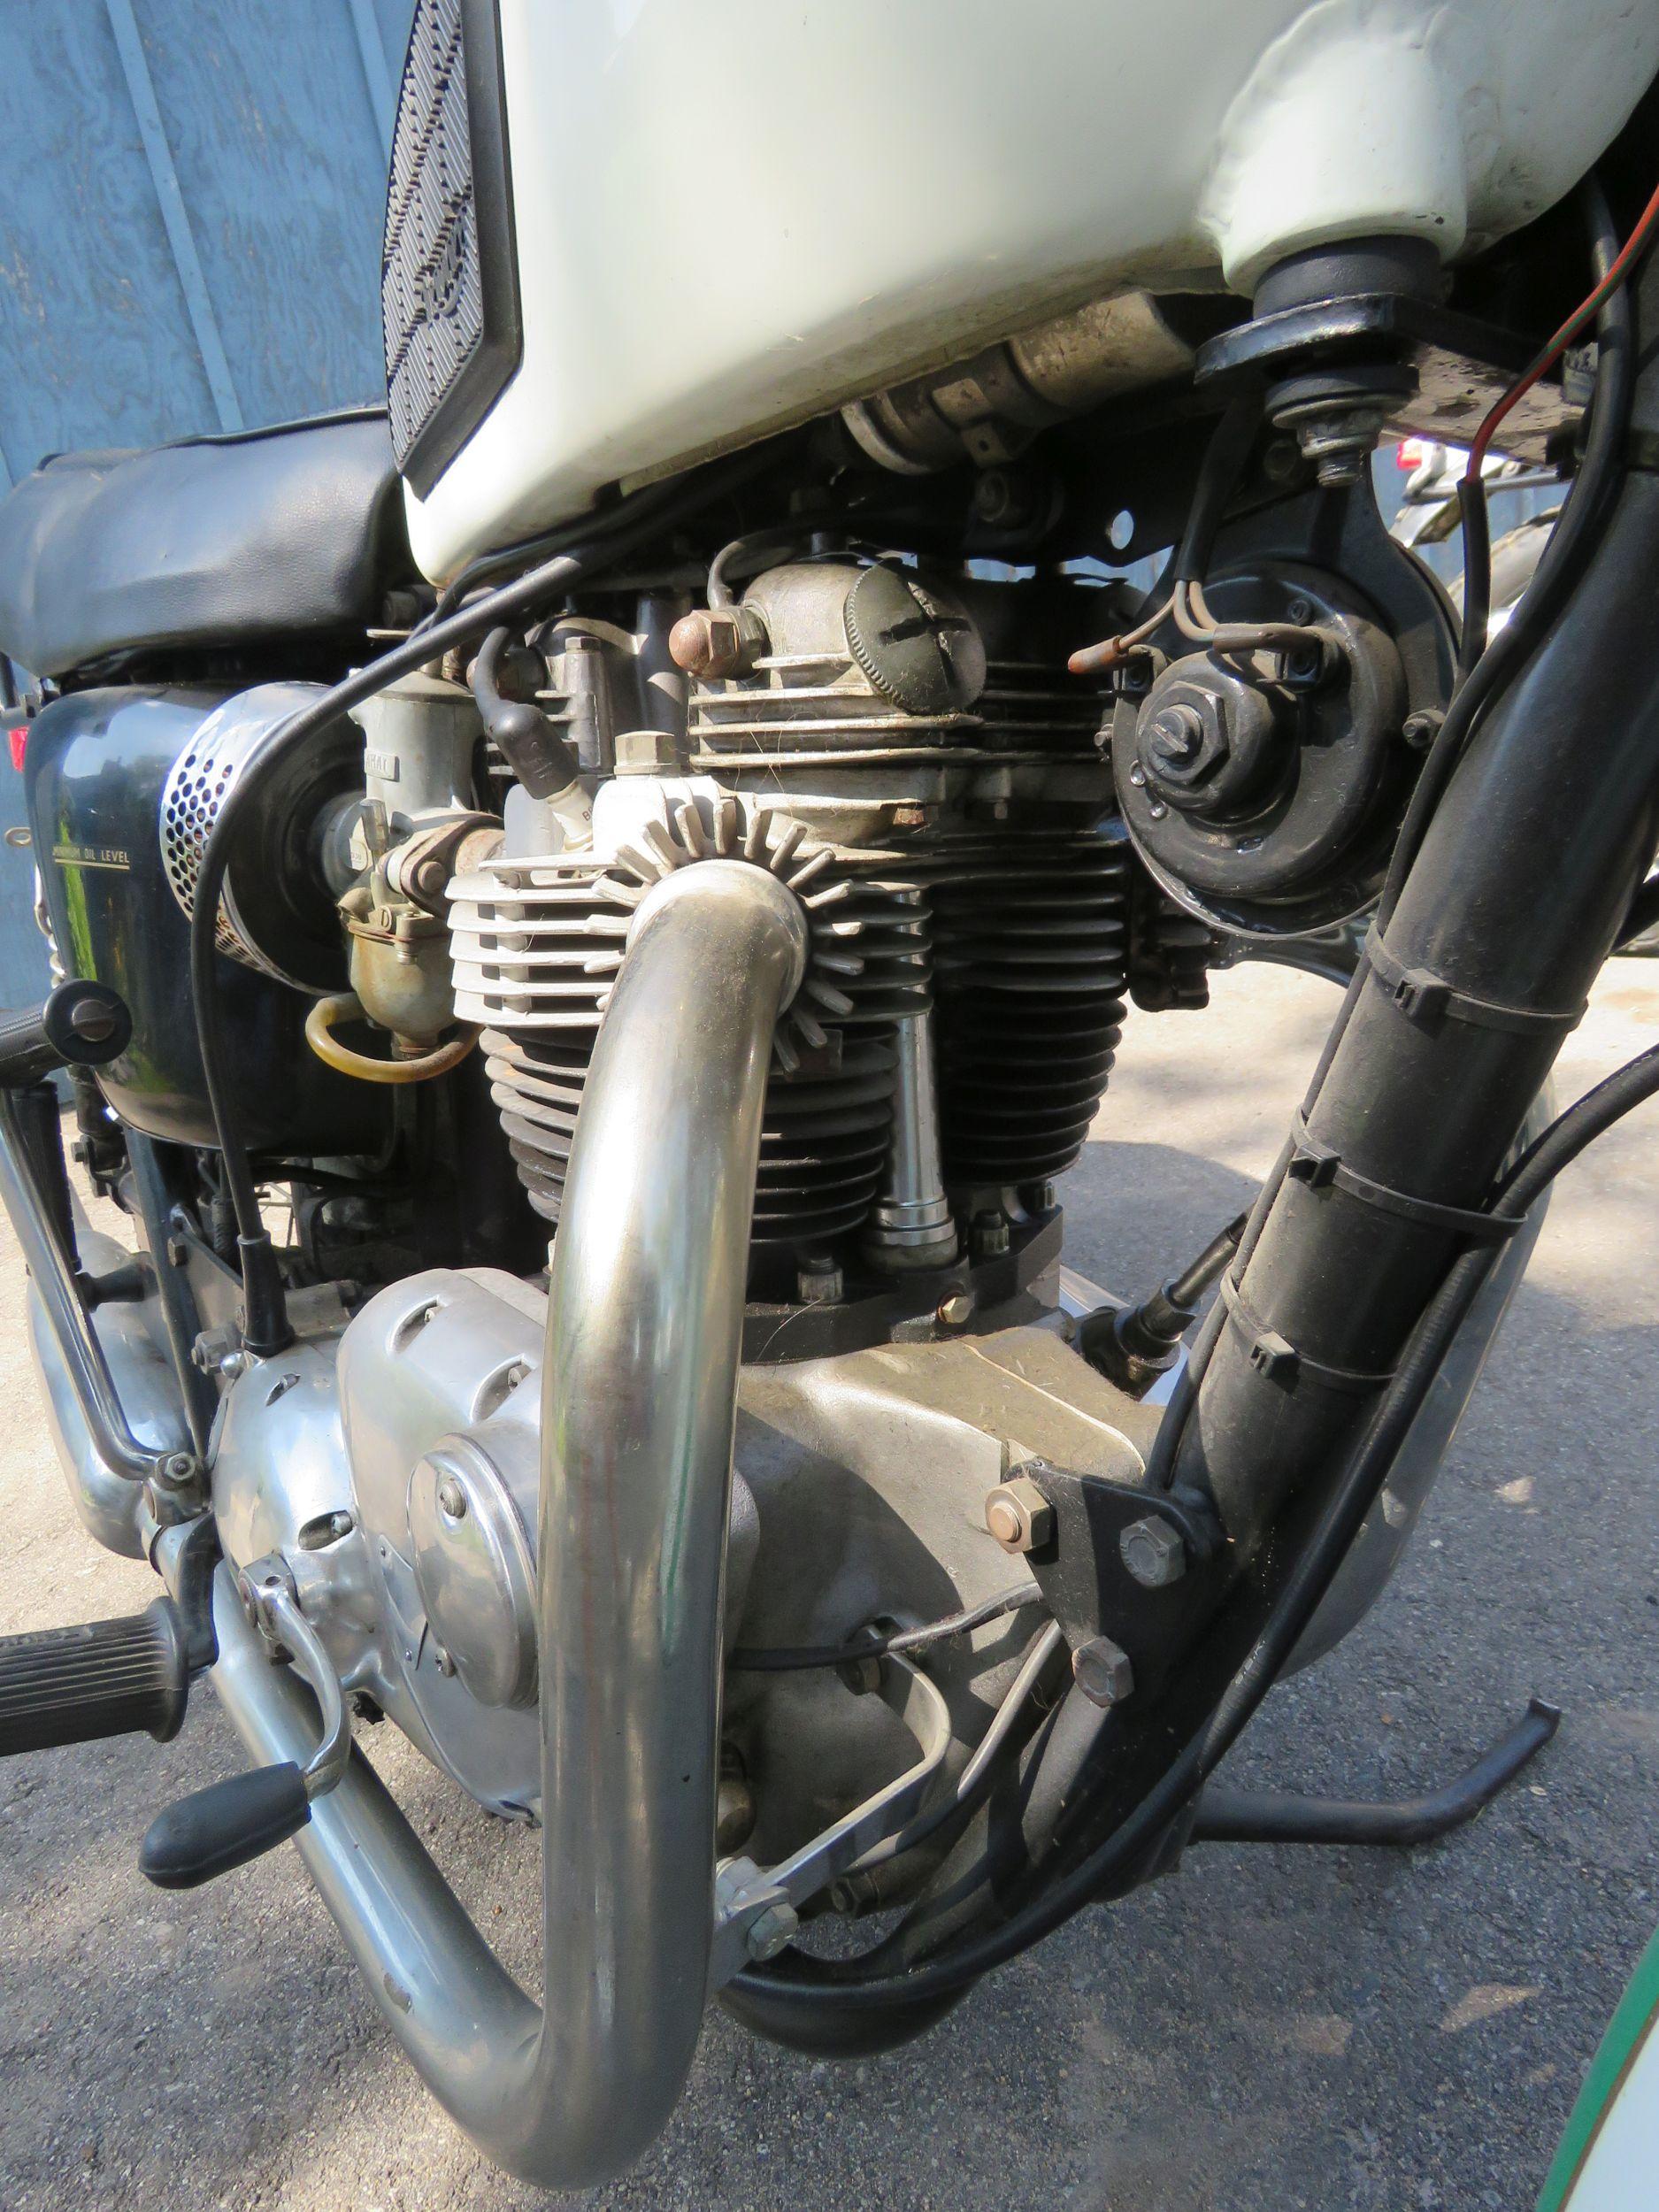 1970 Triumph Bonneville Motorcycle